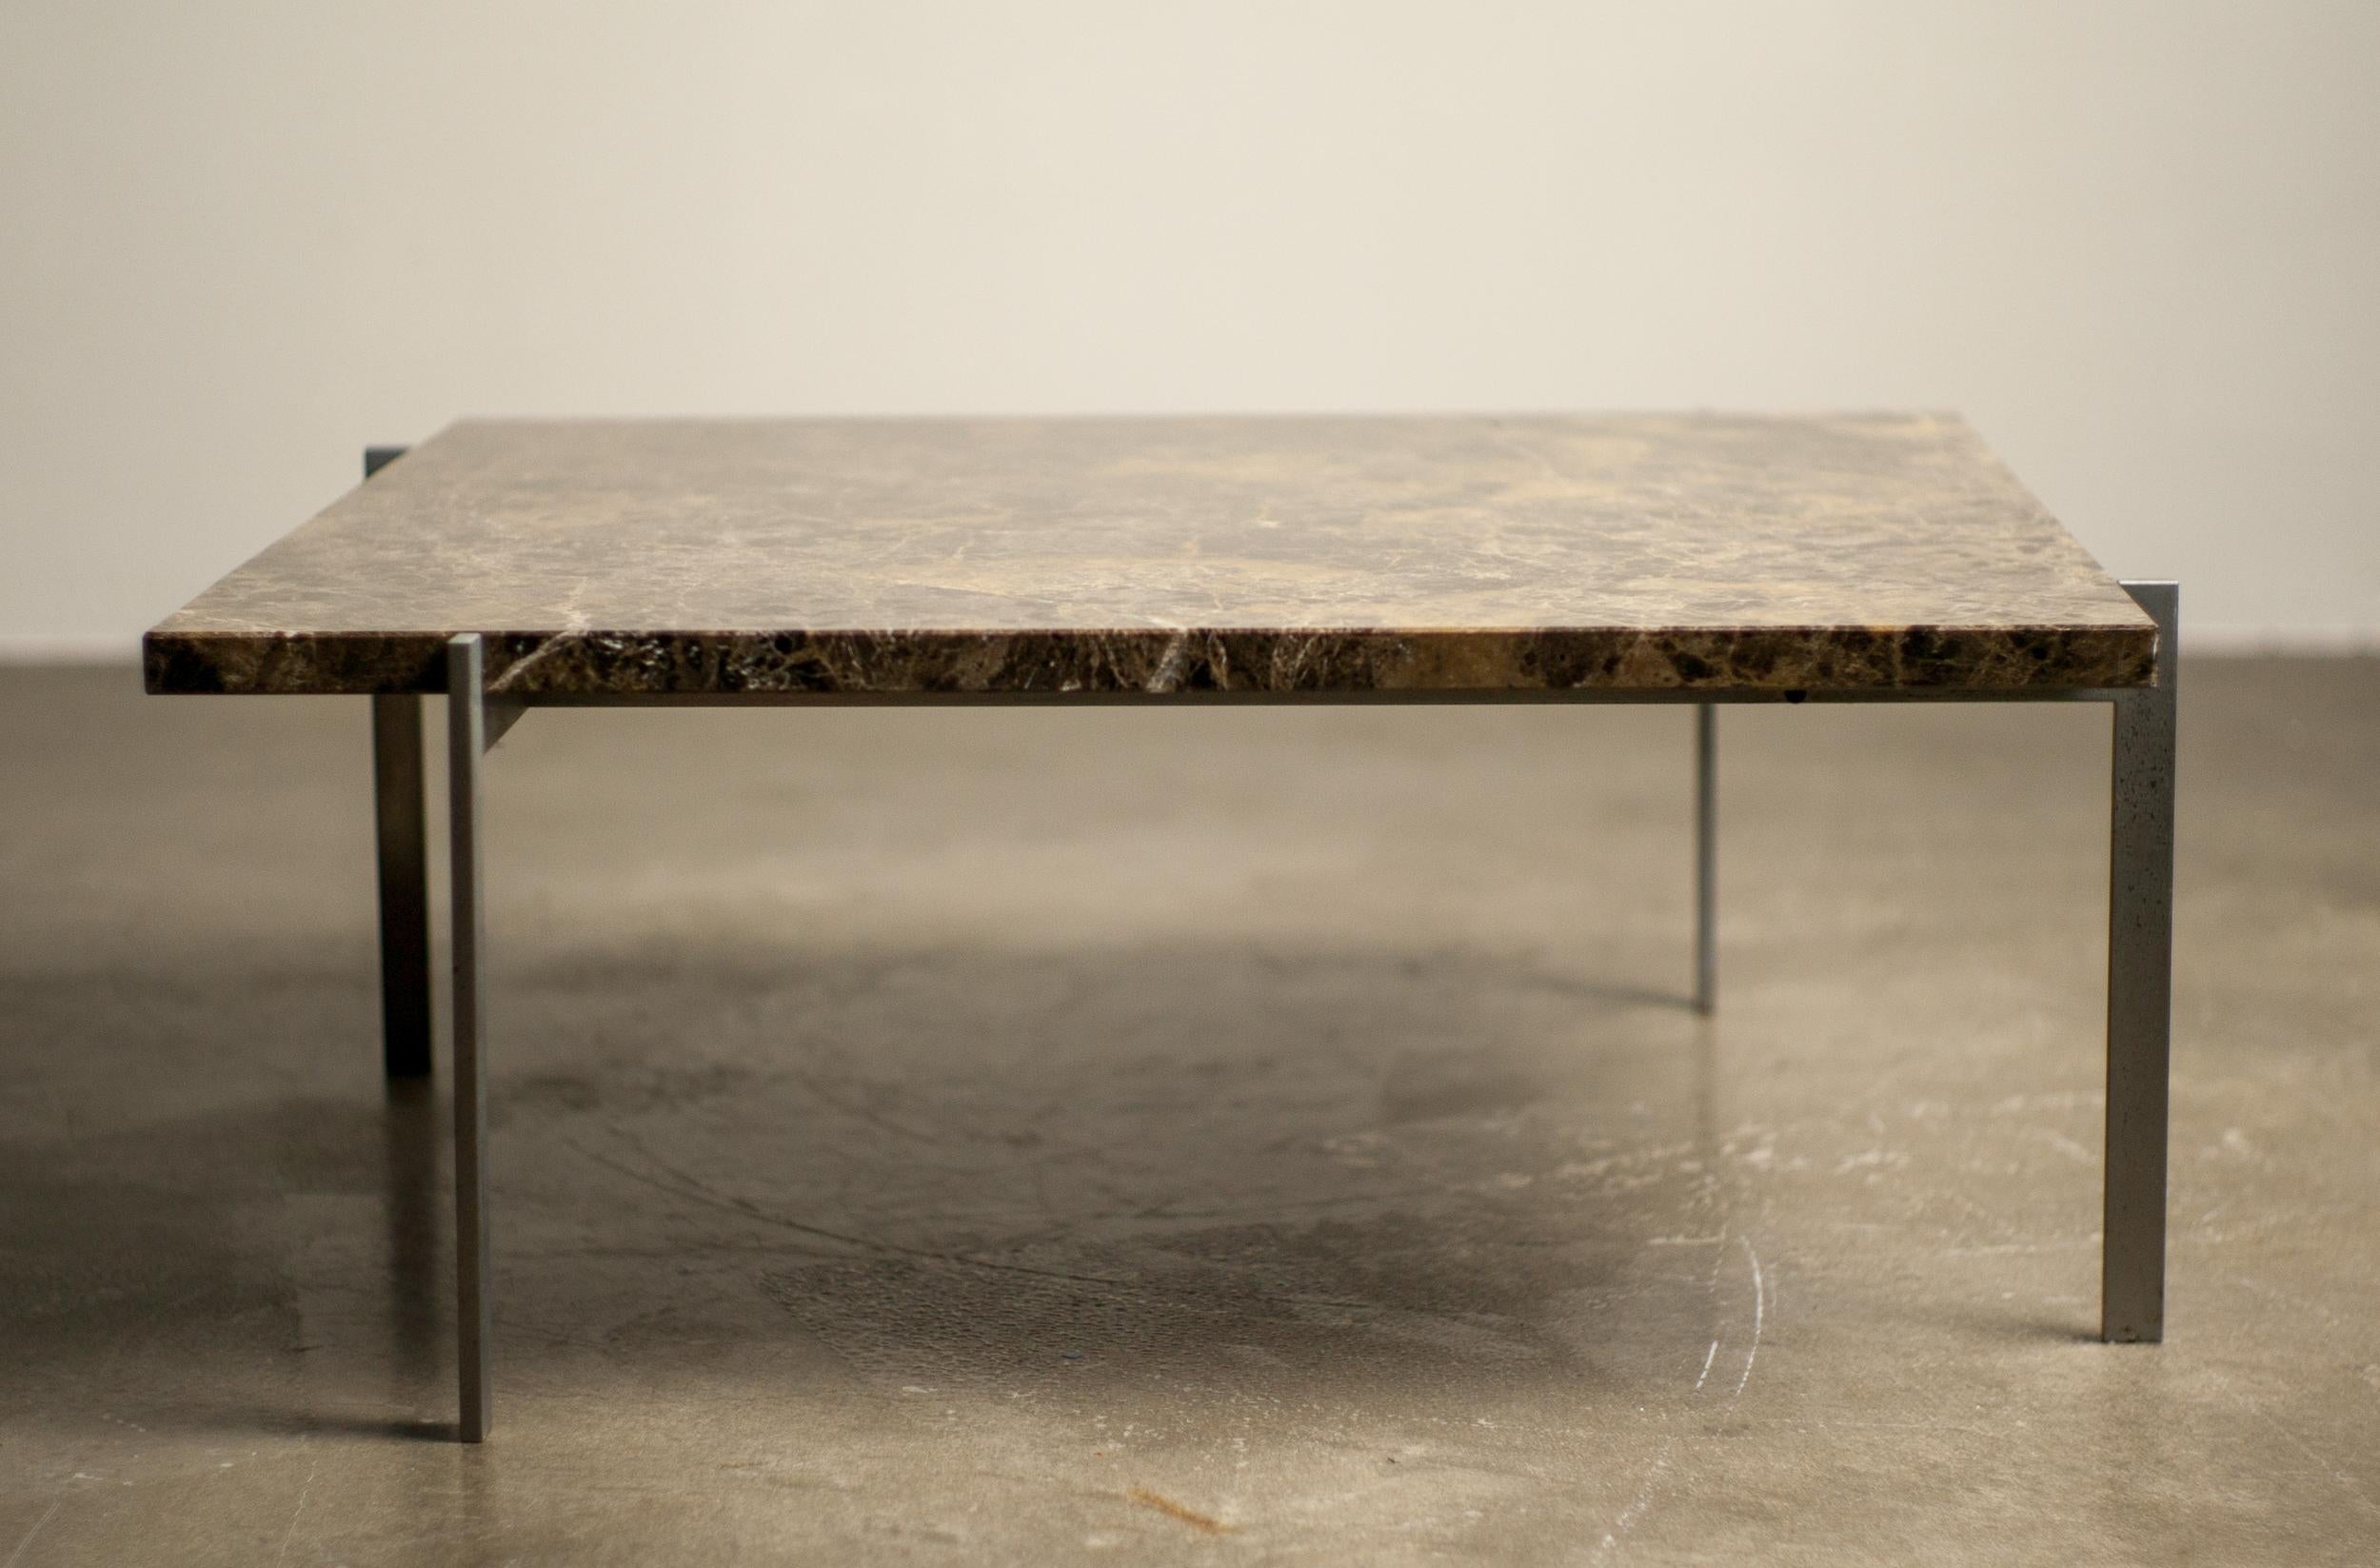 Table basse PK 61 précoce conçue par Paul Kjaerholm pour E. Kold Christensen en bon état vintage avec un spectaculaire plateau en marbre brun foncé, achetée en 1957. Le cadre en acier chromé mat n'est pas marqué et présente une rouille superficielle